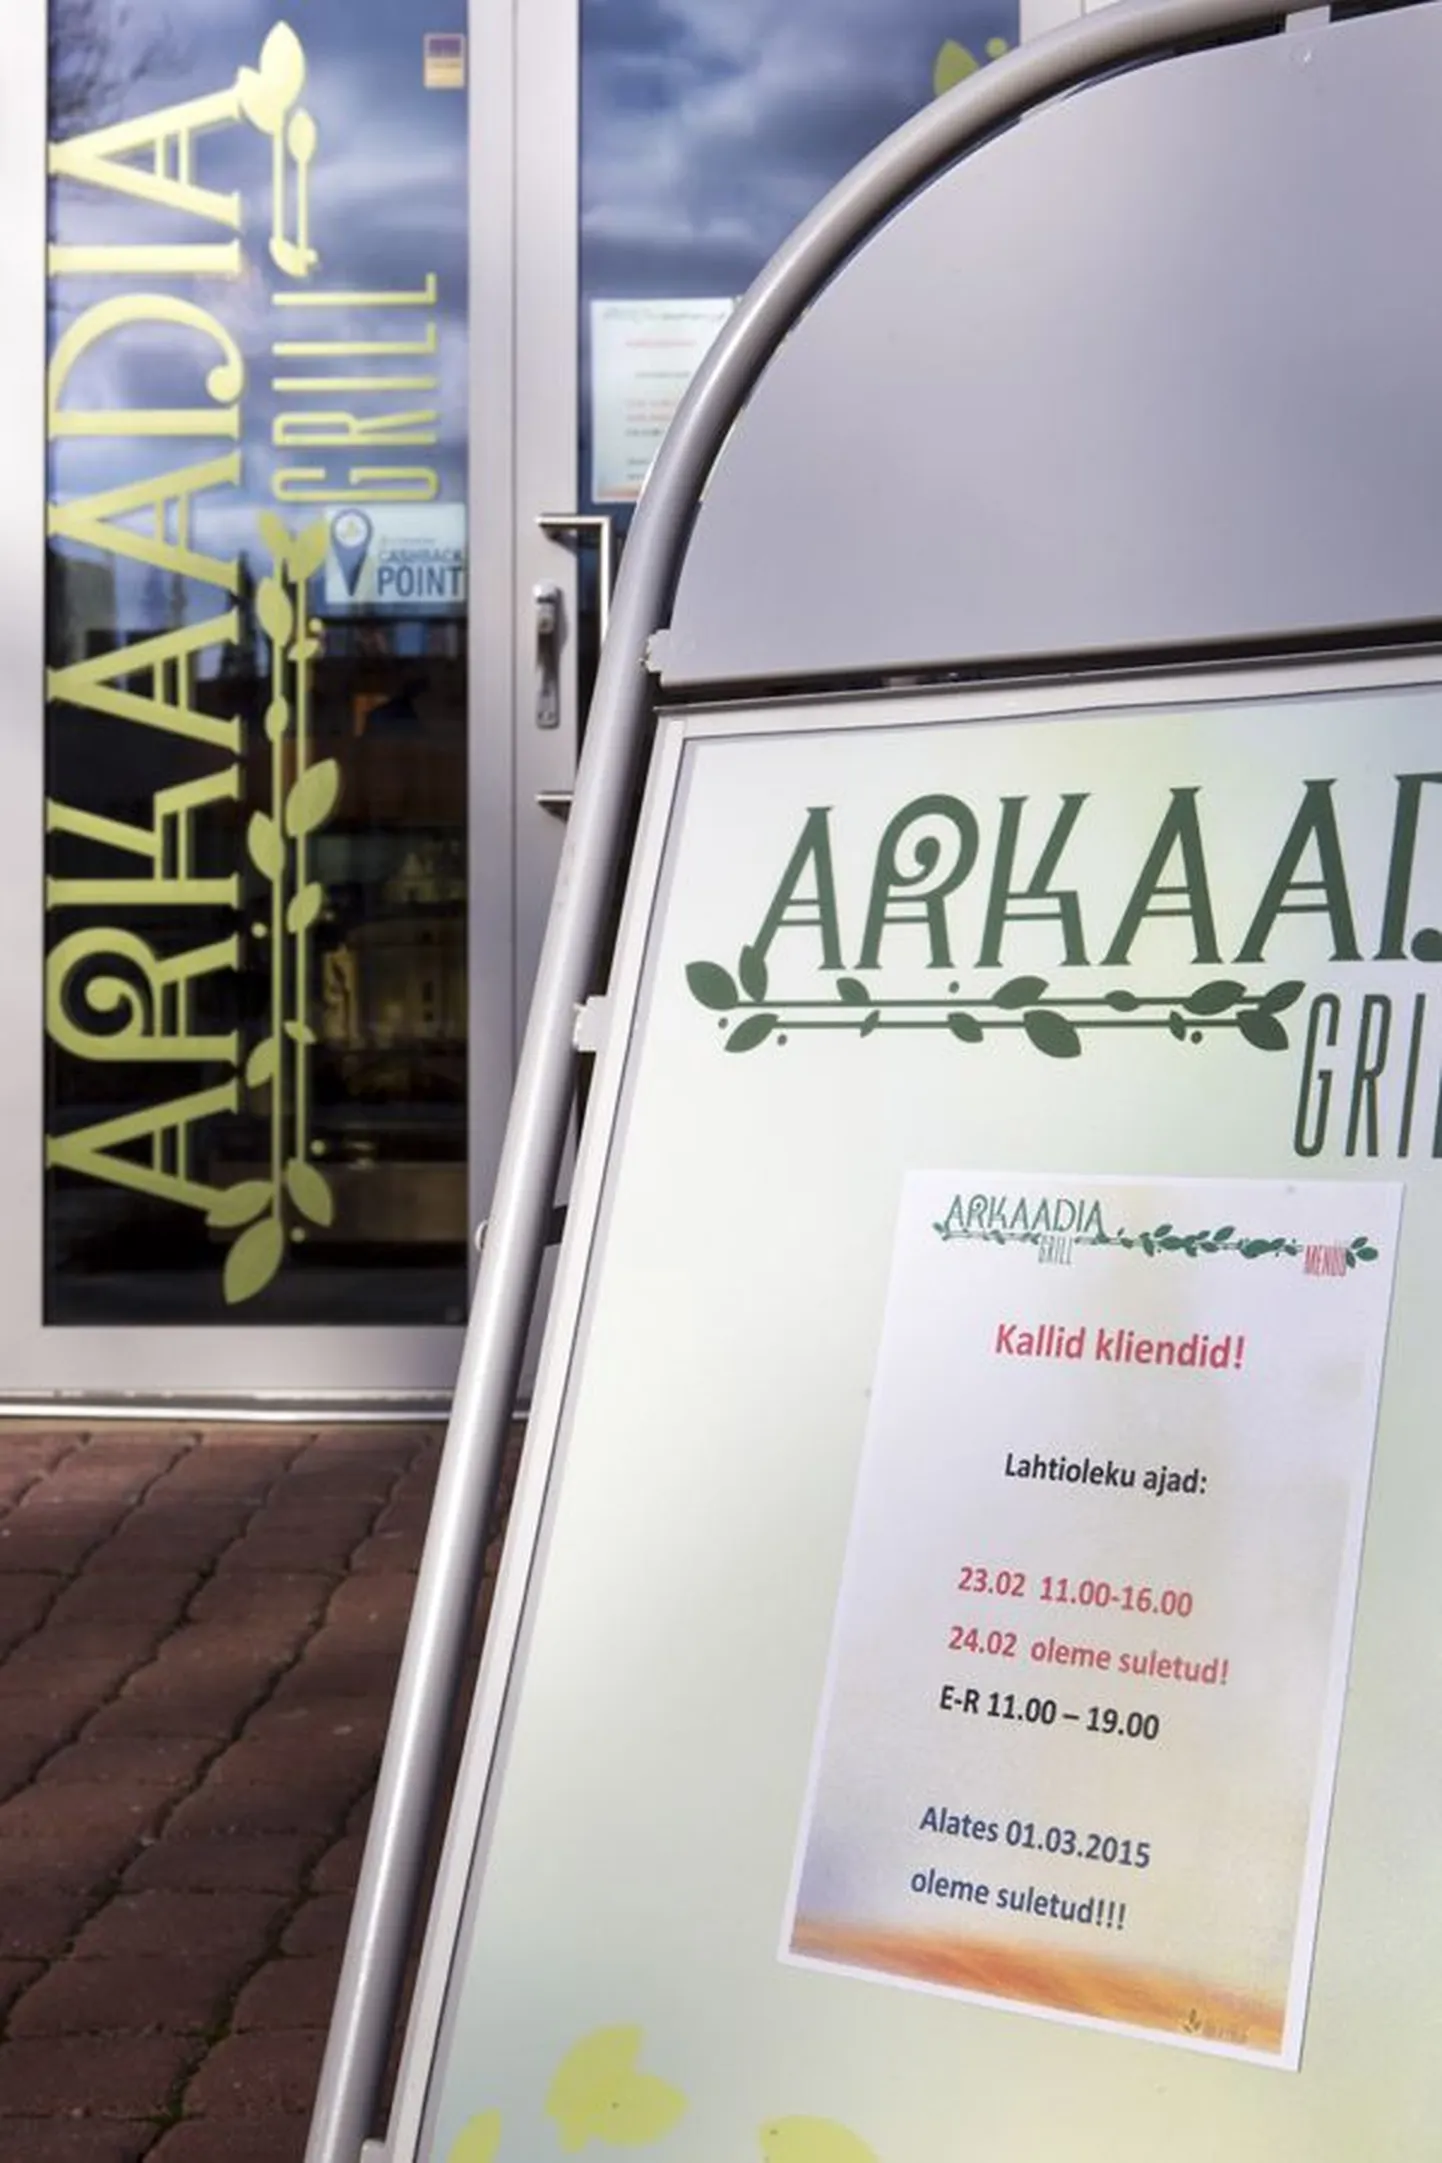 Arkaadia Grilli nime kandev toidukoht tegutses Viljandis Arkaadia aias kümme ja pool kuud. Märtsist on see suletud.